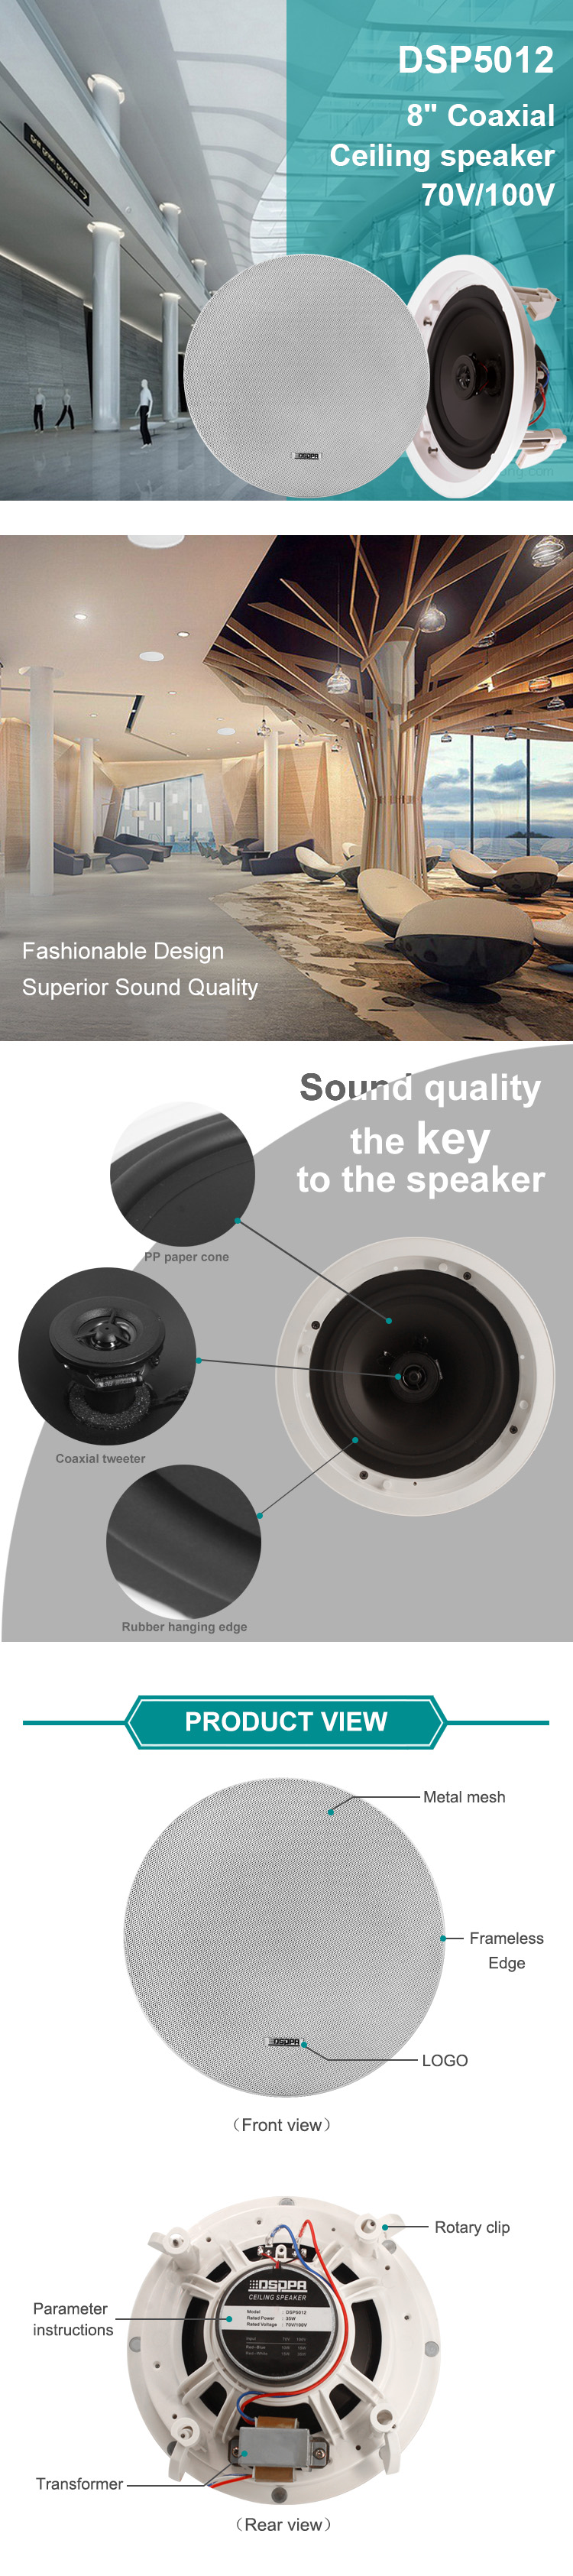 DSP5012 35W Coaxial Frameless Ceiling Speaker